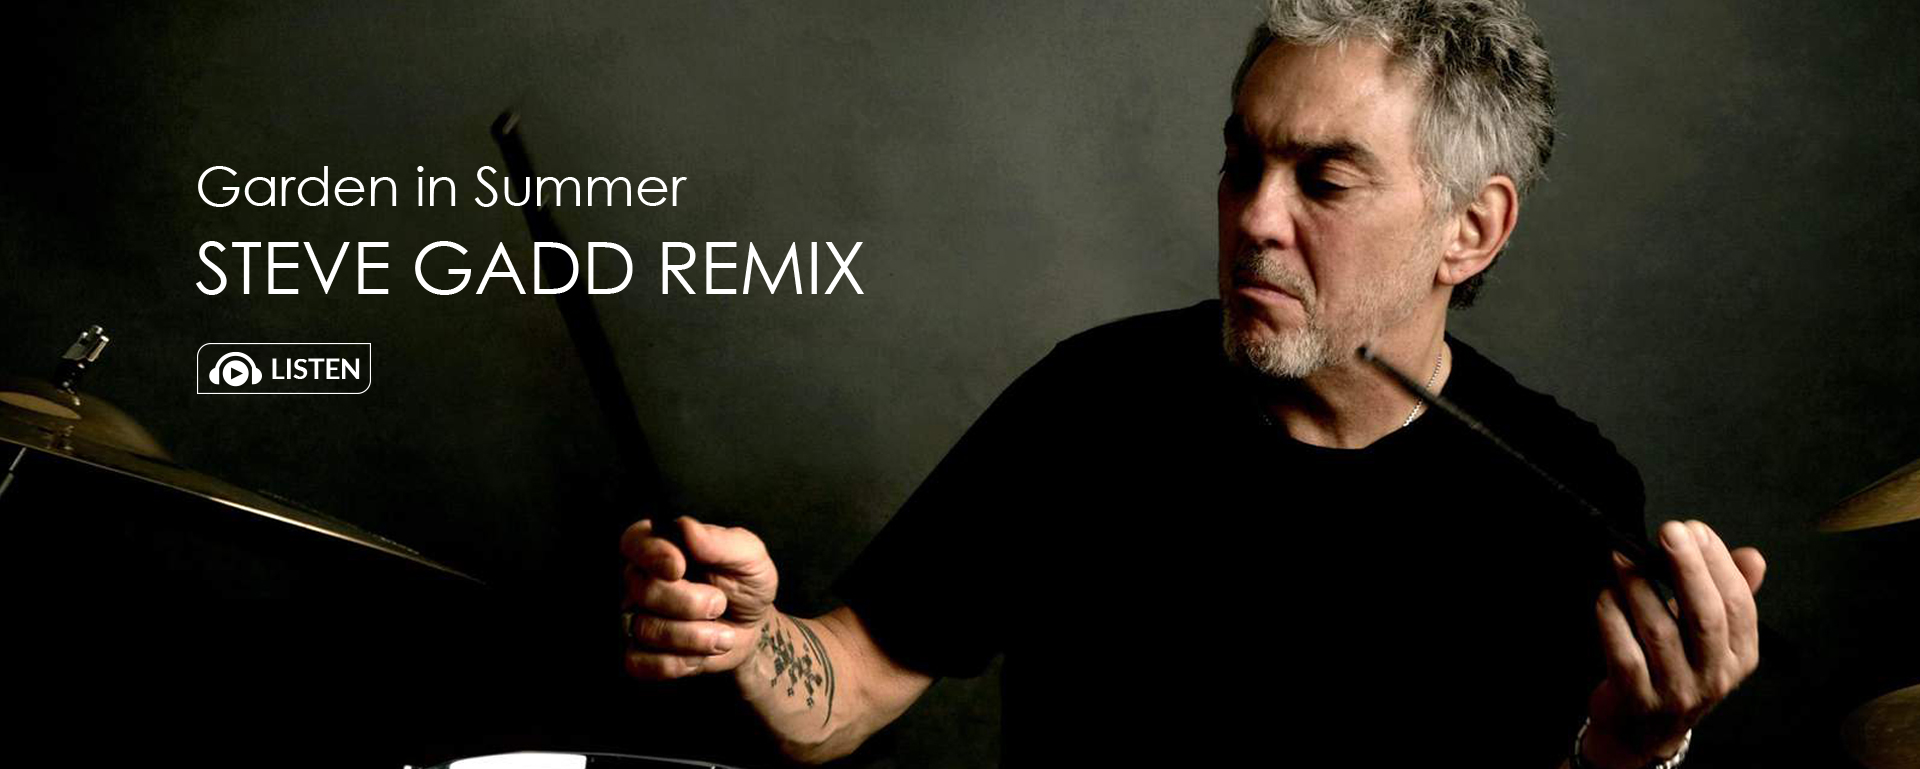 Garden In Summer - Steve Gadd Remix